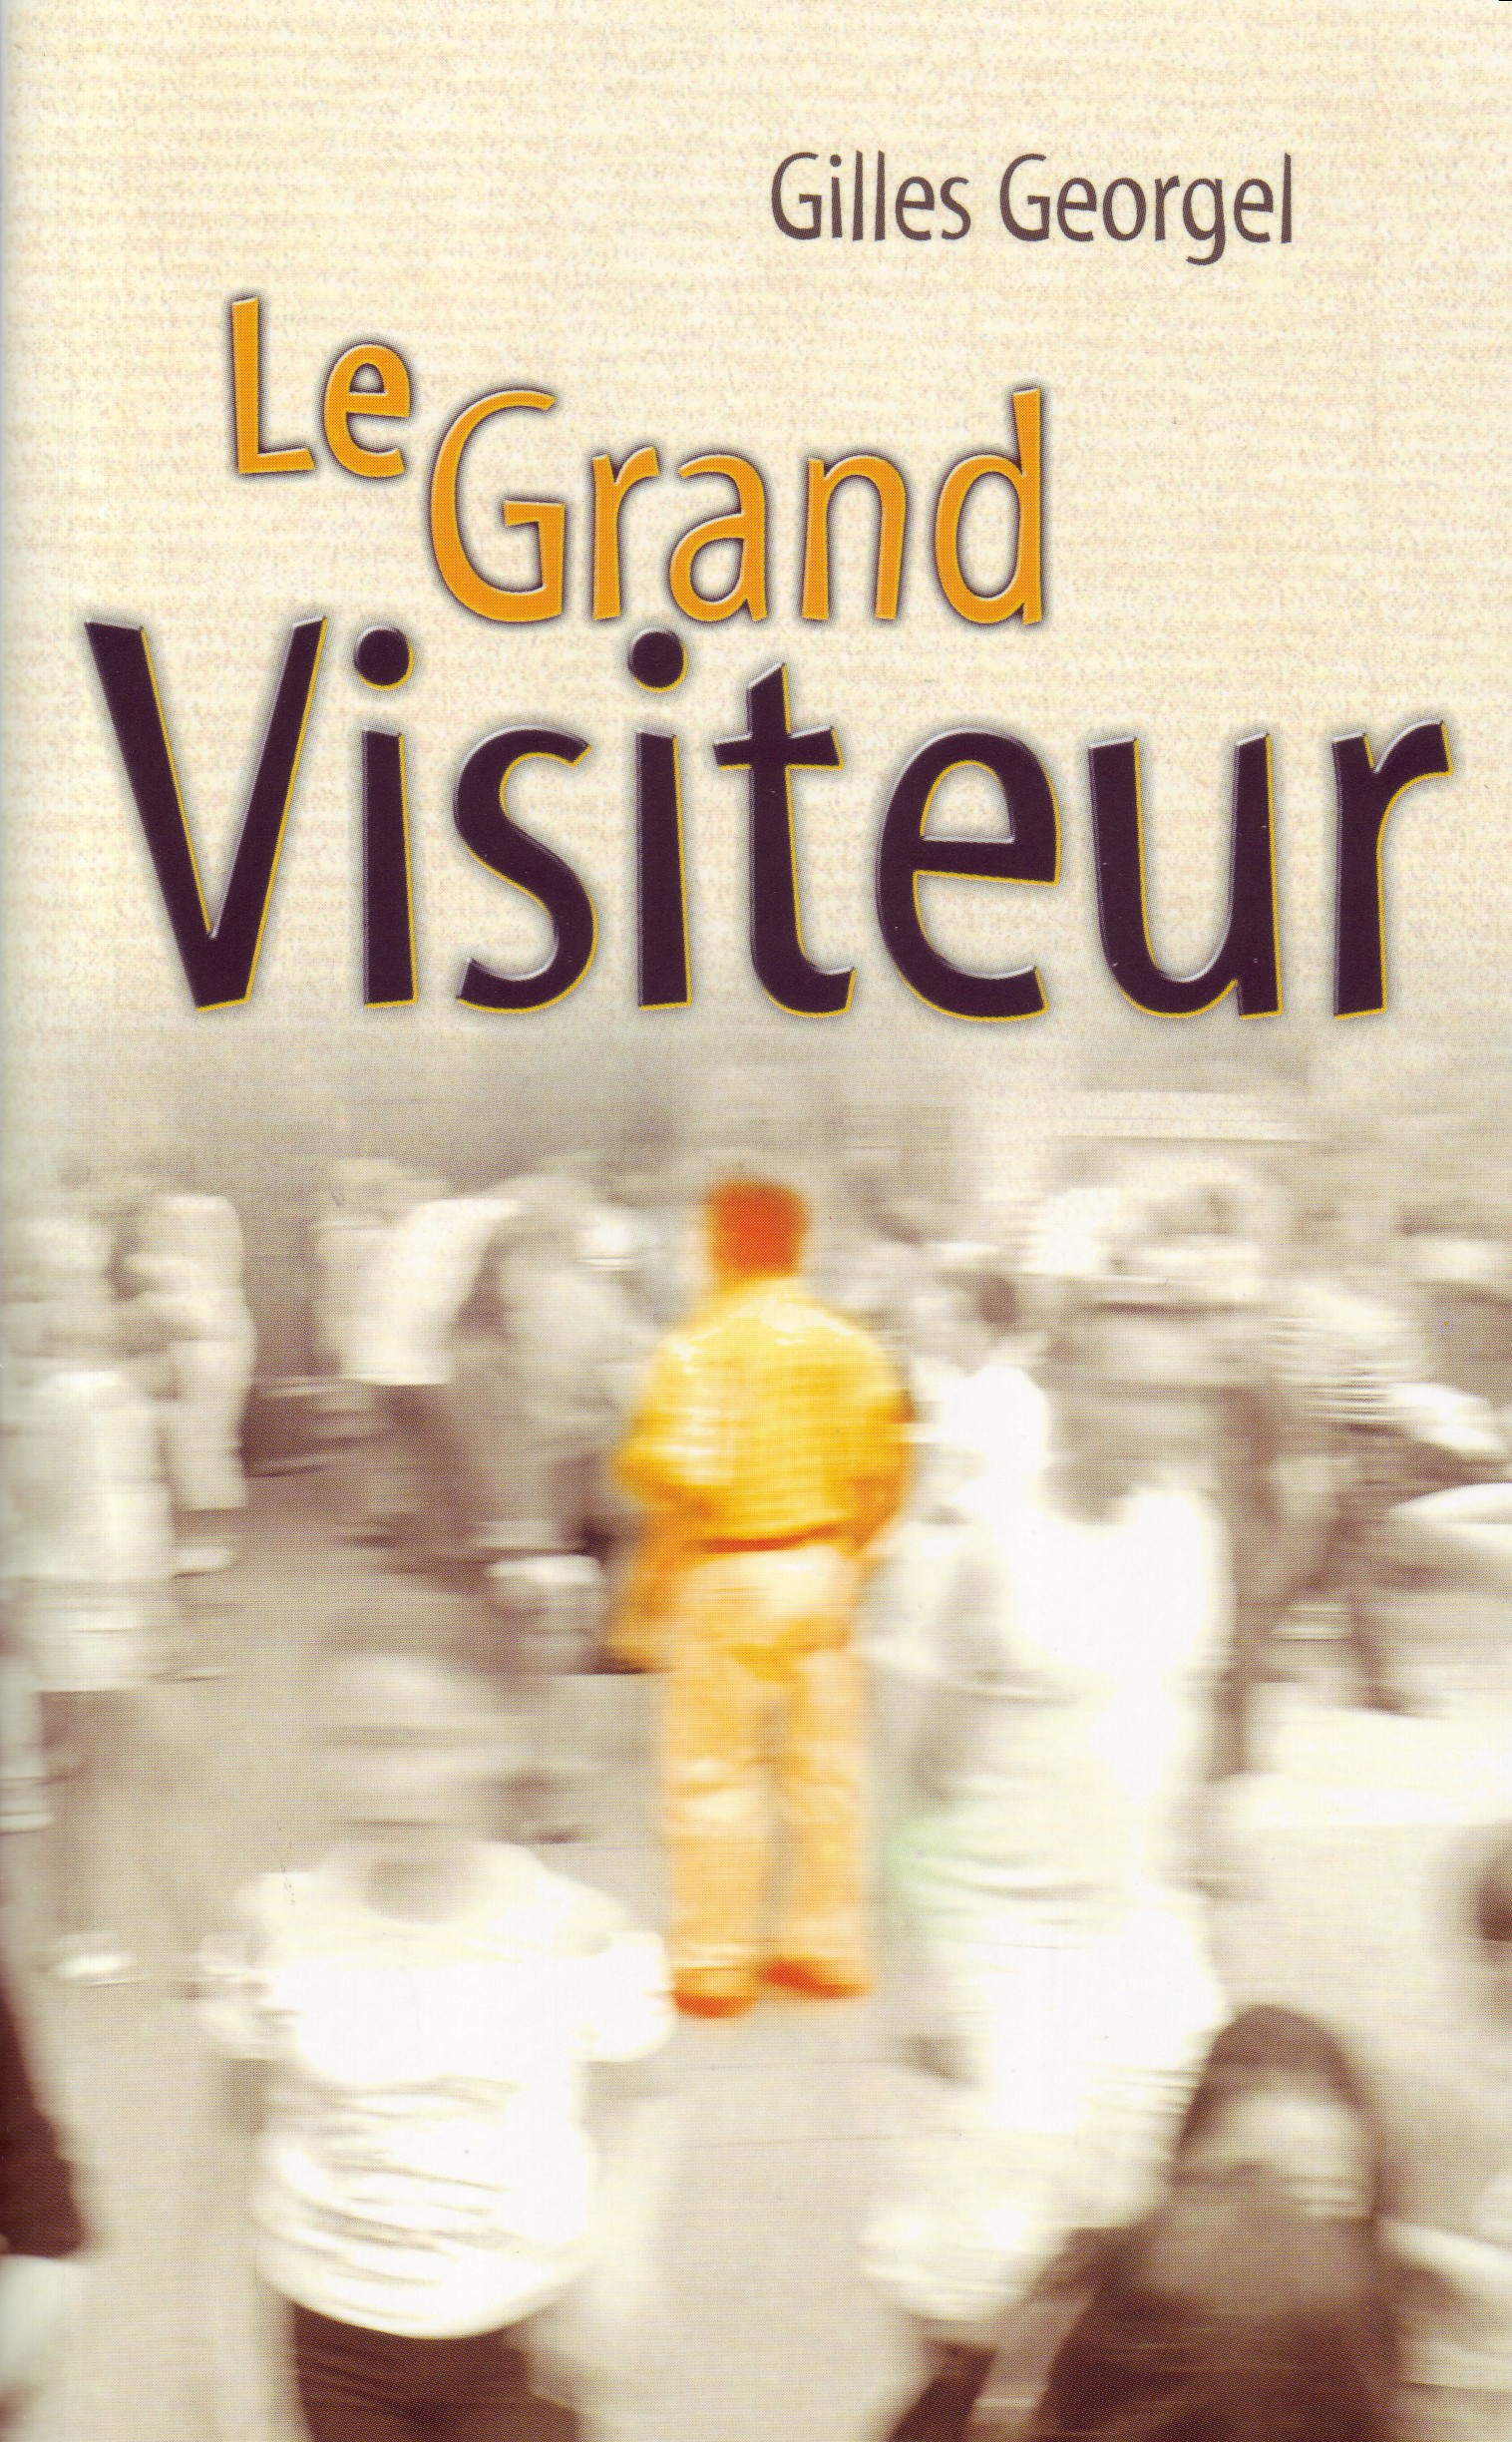 Grand visiteur (Le)